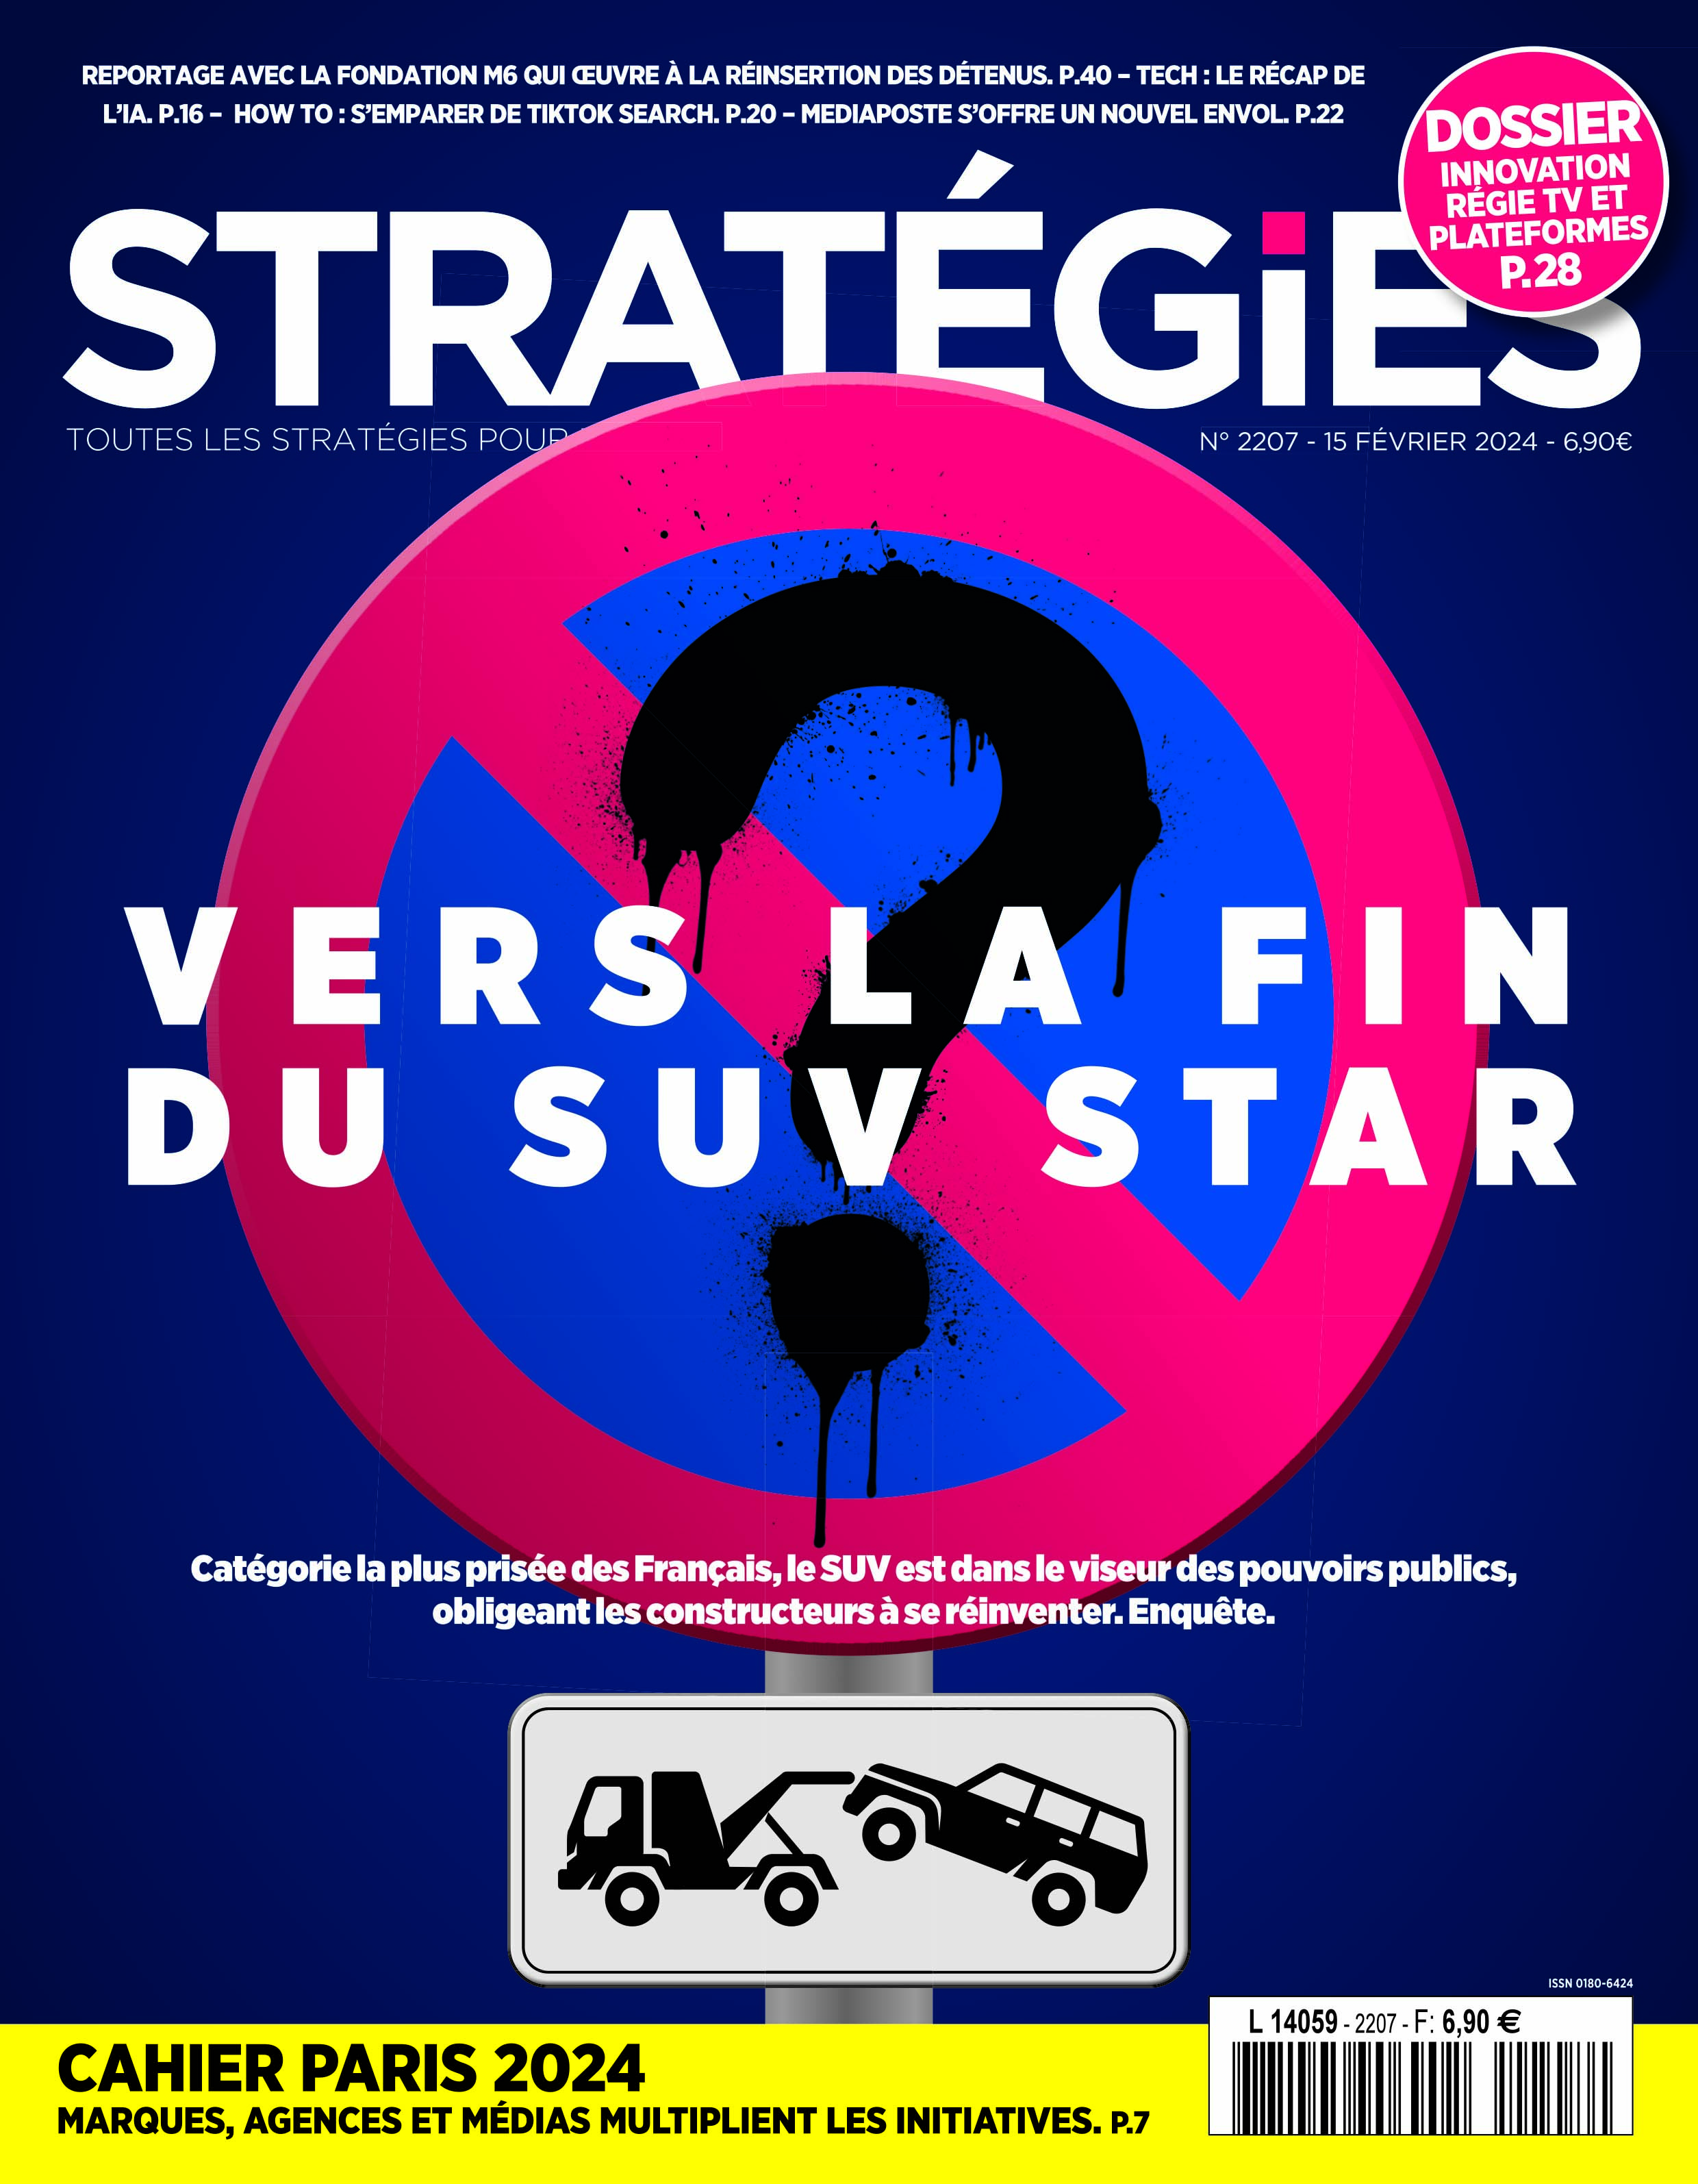 Couverture du magazine Stratégies n°2207 : "Vers la fin du SUV star ?"